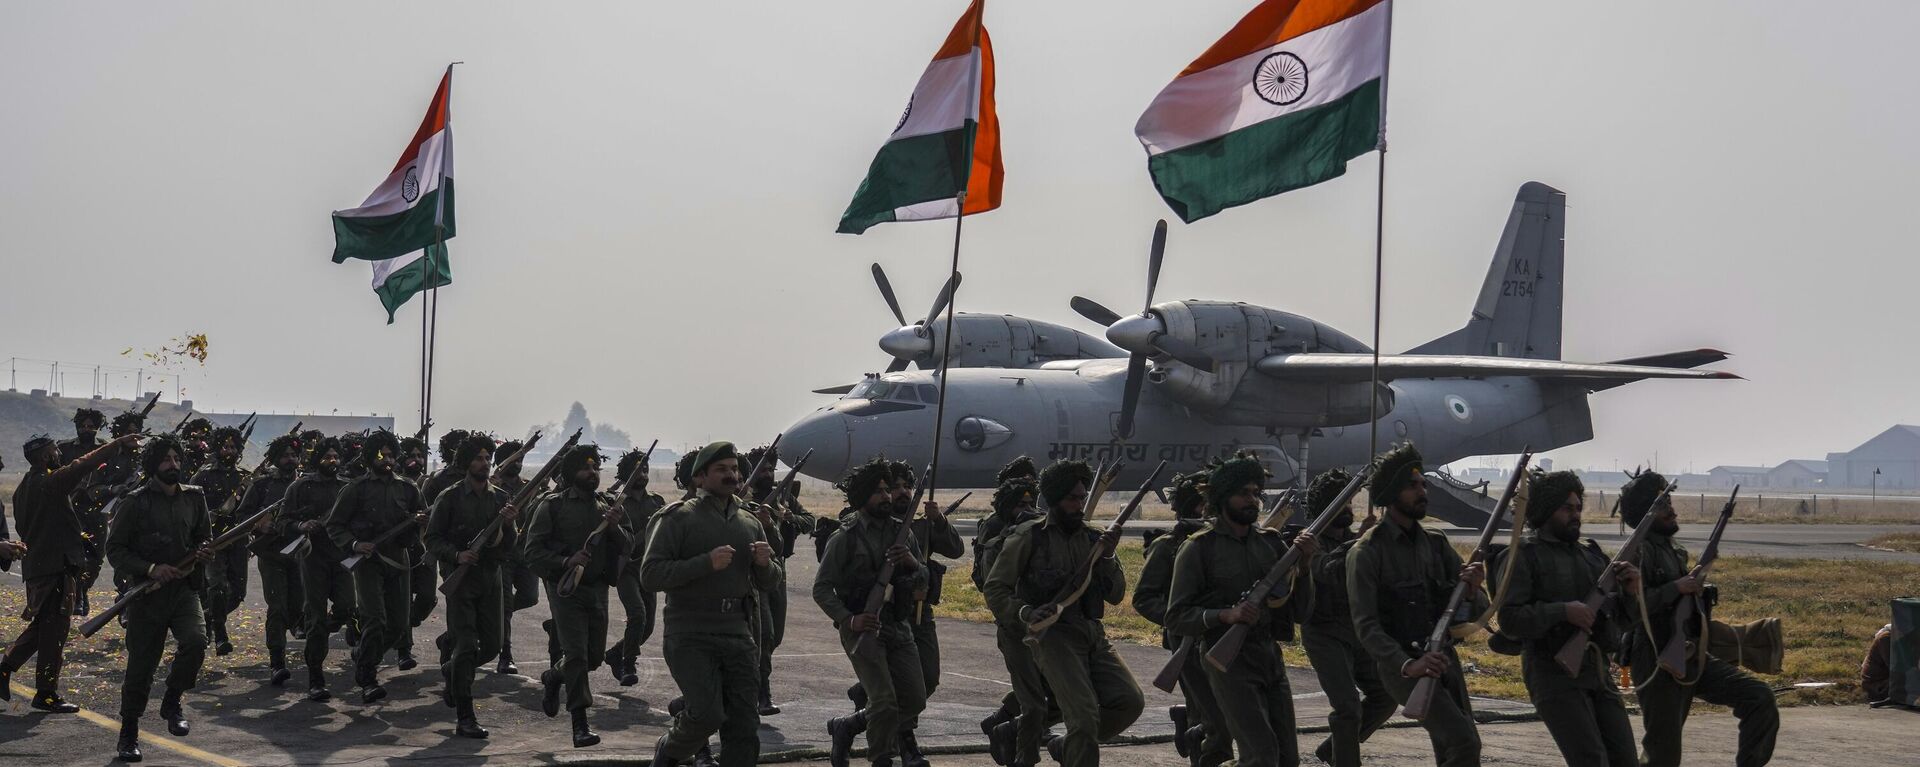 Paraquedistas indianos reencenam o desembarque do Exército em Serinagar, na estação da Força Aérea Indiana nos arredores de Serinagar, na Caxemira, em 27 de outubro de 2022. Tropas indianas desembarcaram na região em 27 de outubro de 1947 - Sputnik Brasil, 1920, 22.12.2022